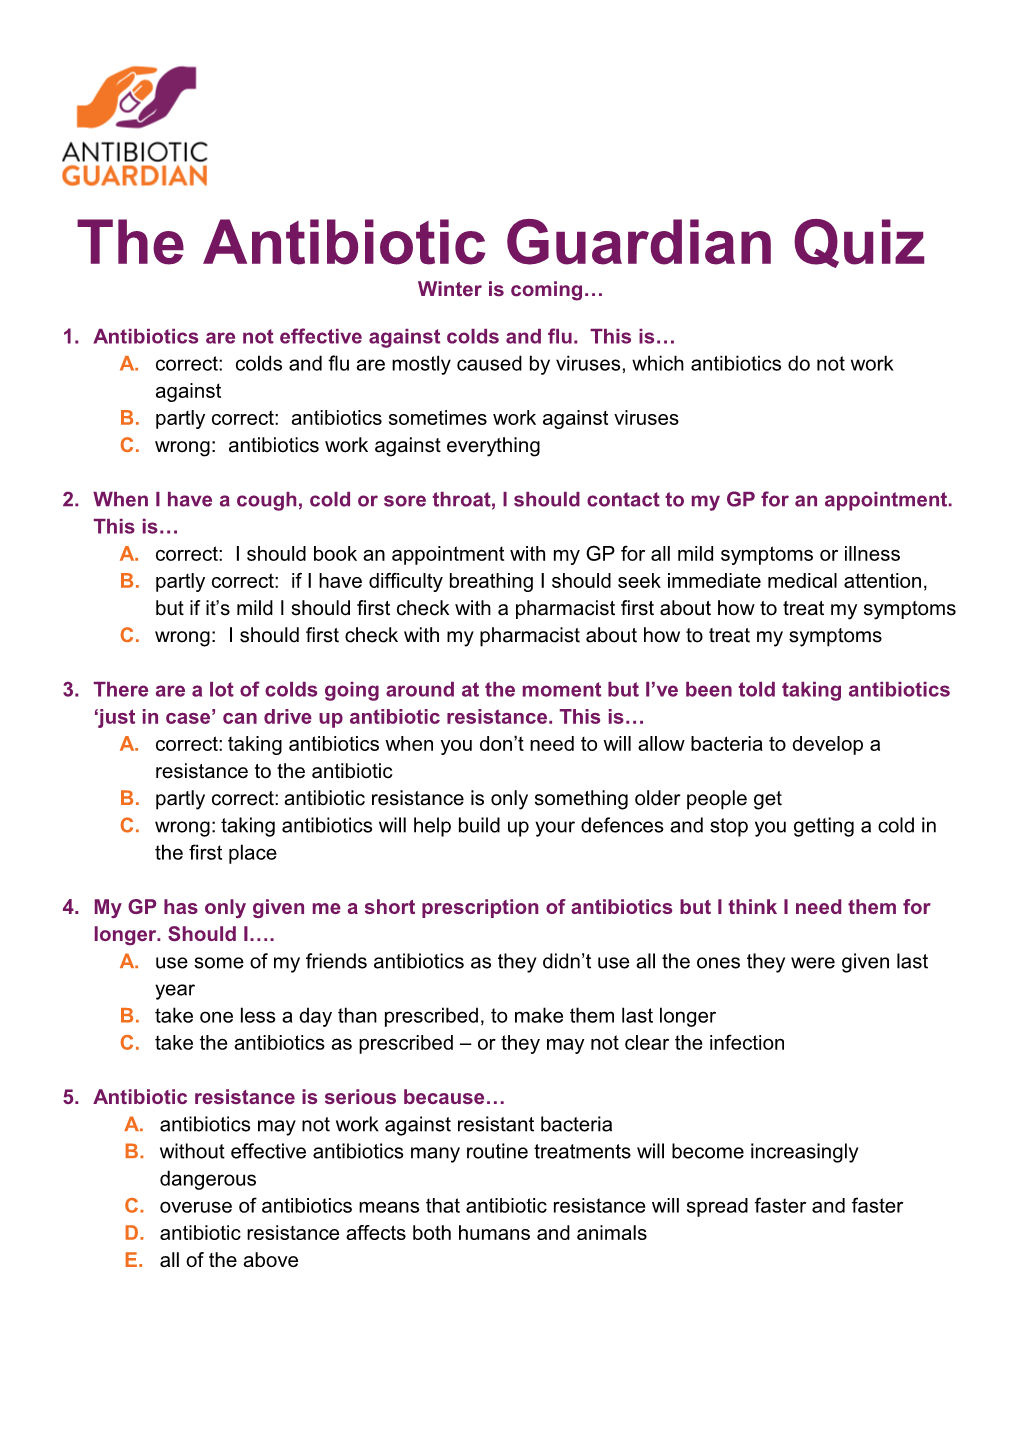 The Antibiotic Guardian Quiz